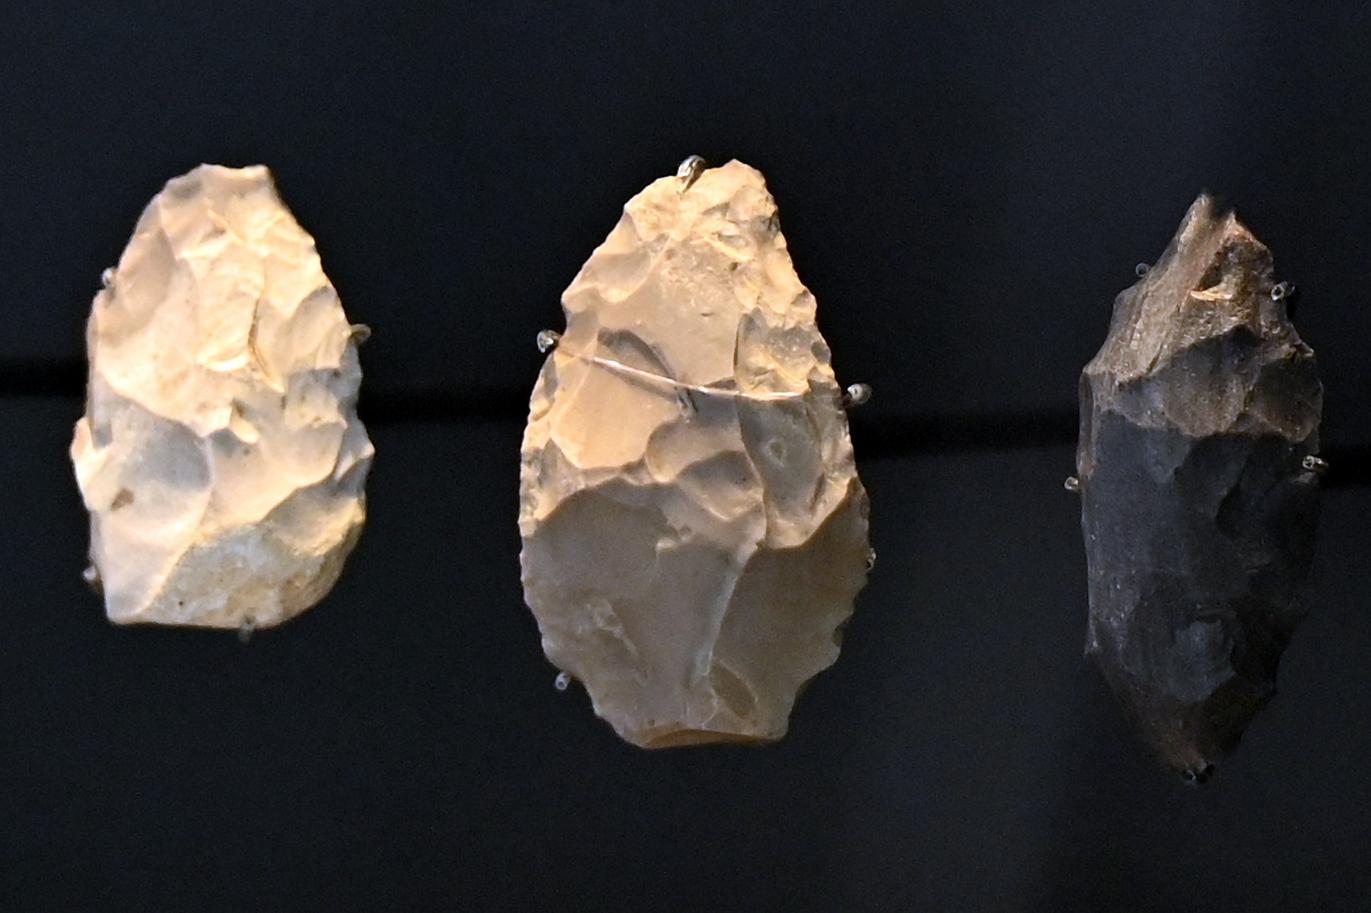 Blattförmiger Schaber, Würm-Kaltzeit Beginn, 200000 - 40000 v. Chr.